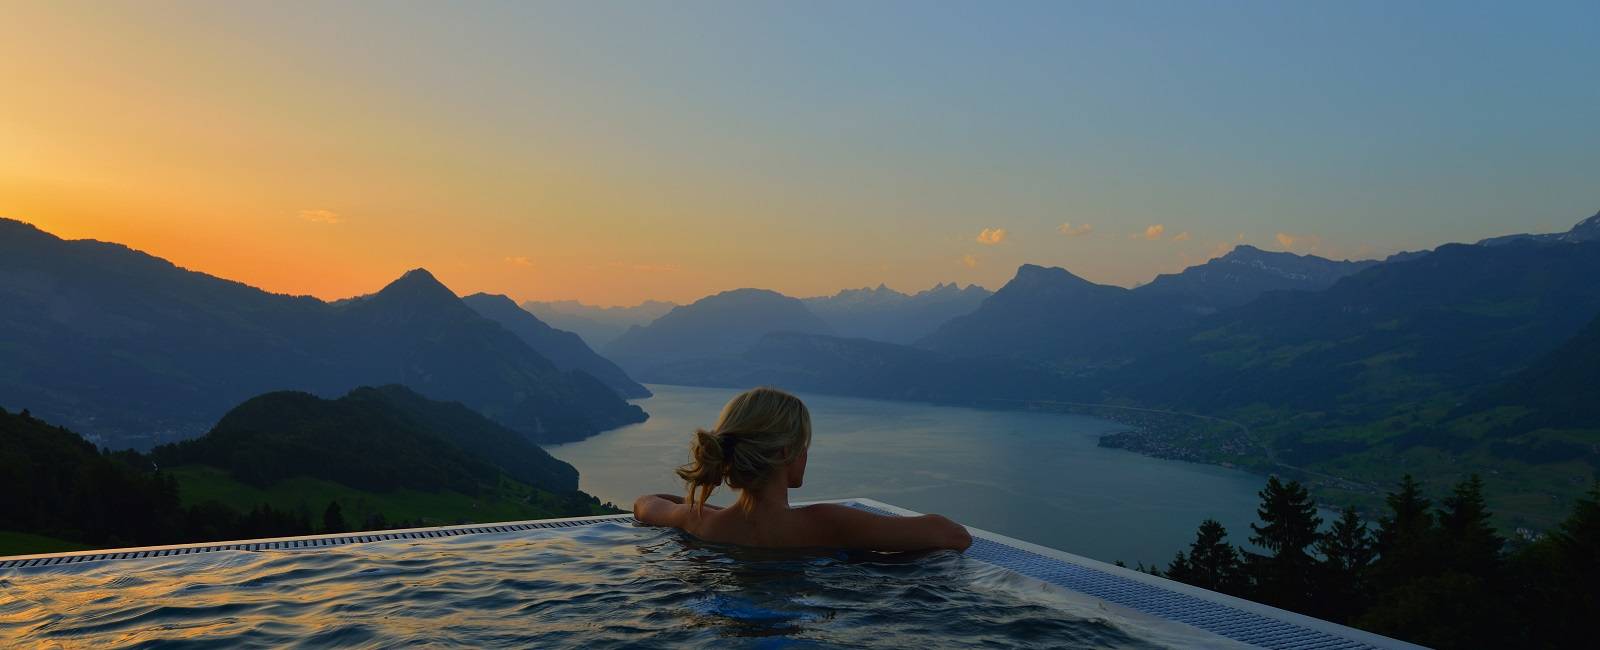  Hotel des Monats 

Die besten Luxushotels der Schweiz